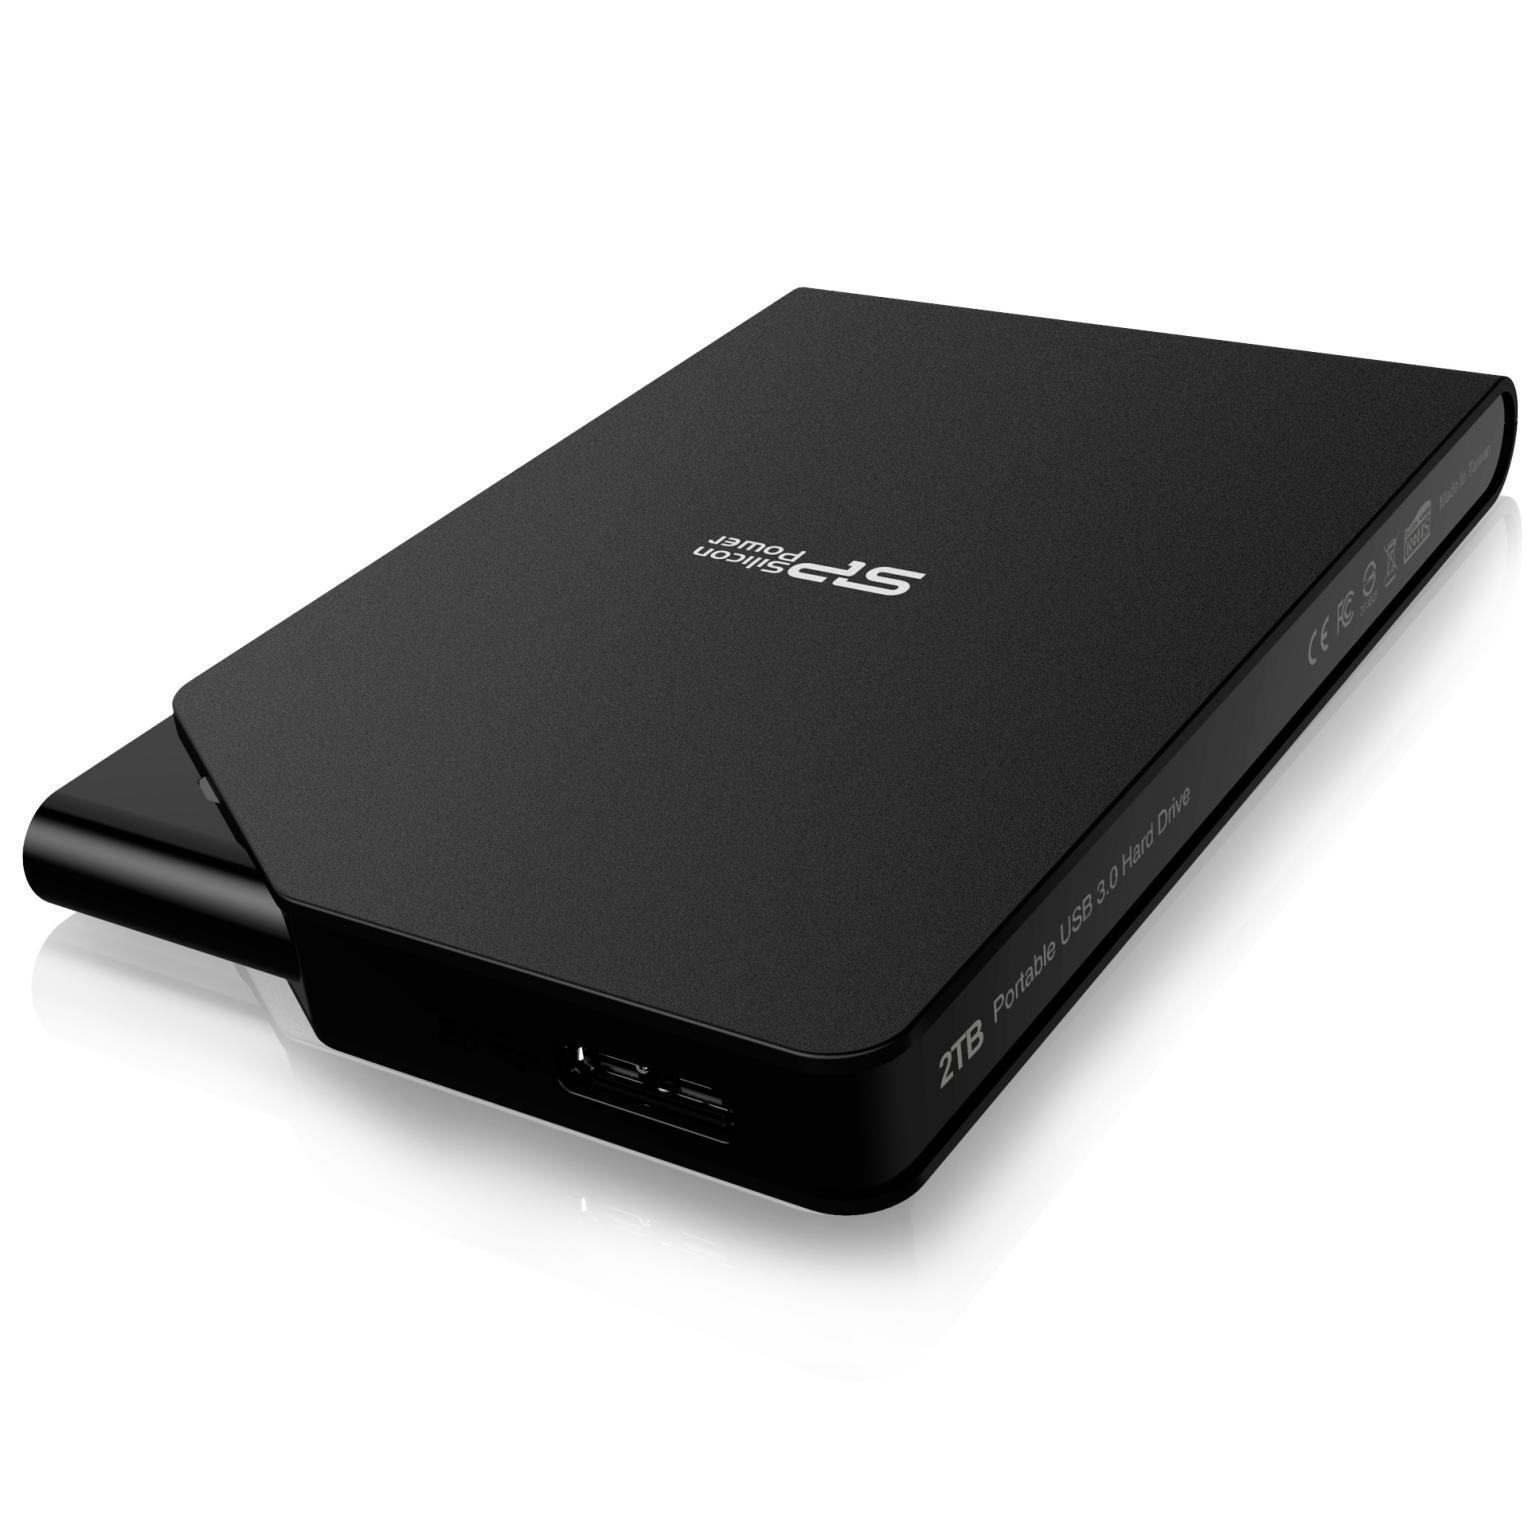 Externe harde schijf 500GB - Merk: Silicon Power 2.5'', Aansluiting: USB 3.0, Opslagcapaciteit: 500 Voeding: USB.